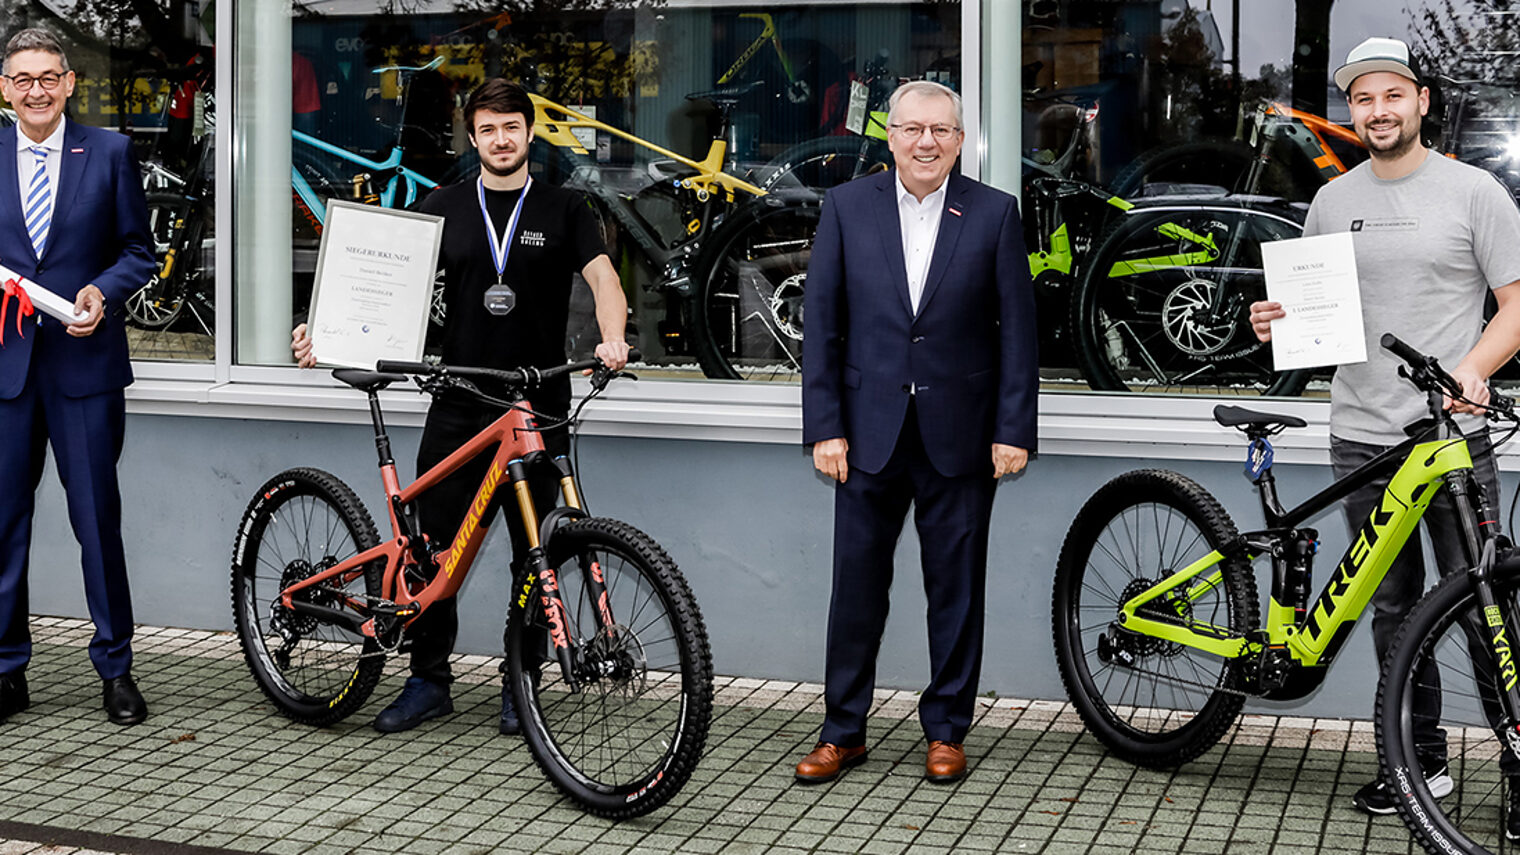 Stellvertretend für alle Gewinner übergaben die HWK-Vertreter die Auszeichnung an Daniel Becker aus Regensburg (2. v. li.) und seinen Ausbilder Lukas Kuffer von KL Bikes Shop & Service (1. v. re.). 